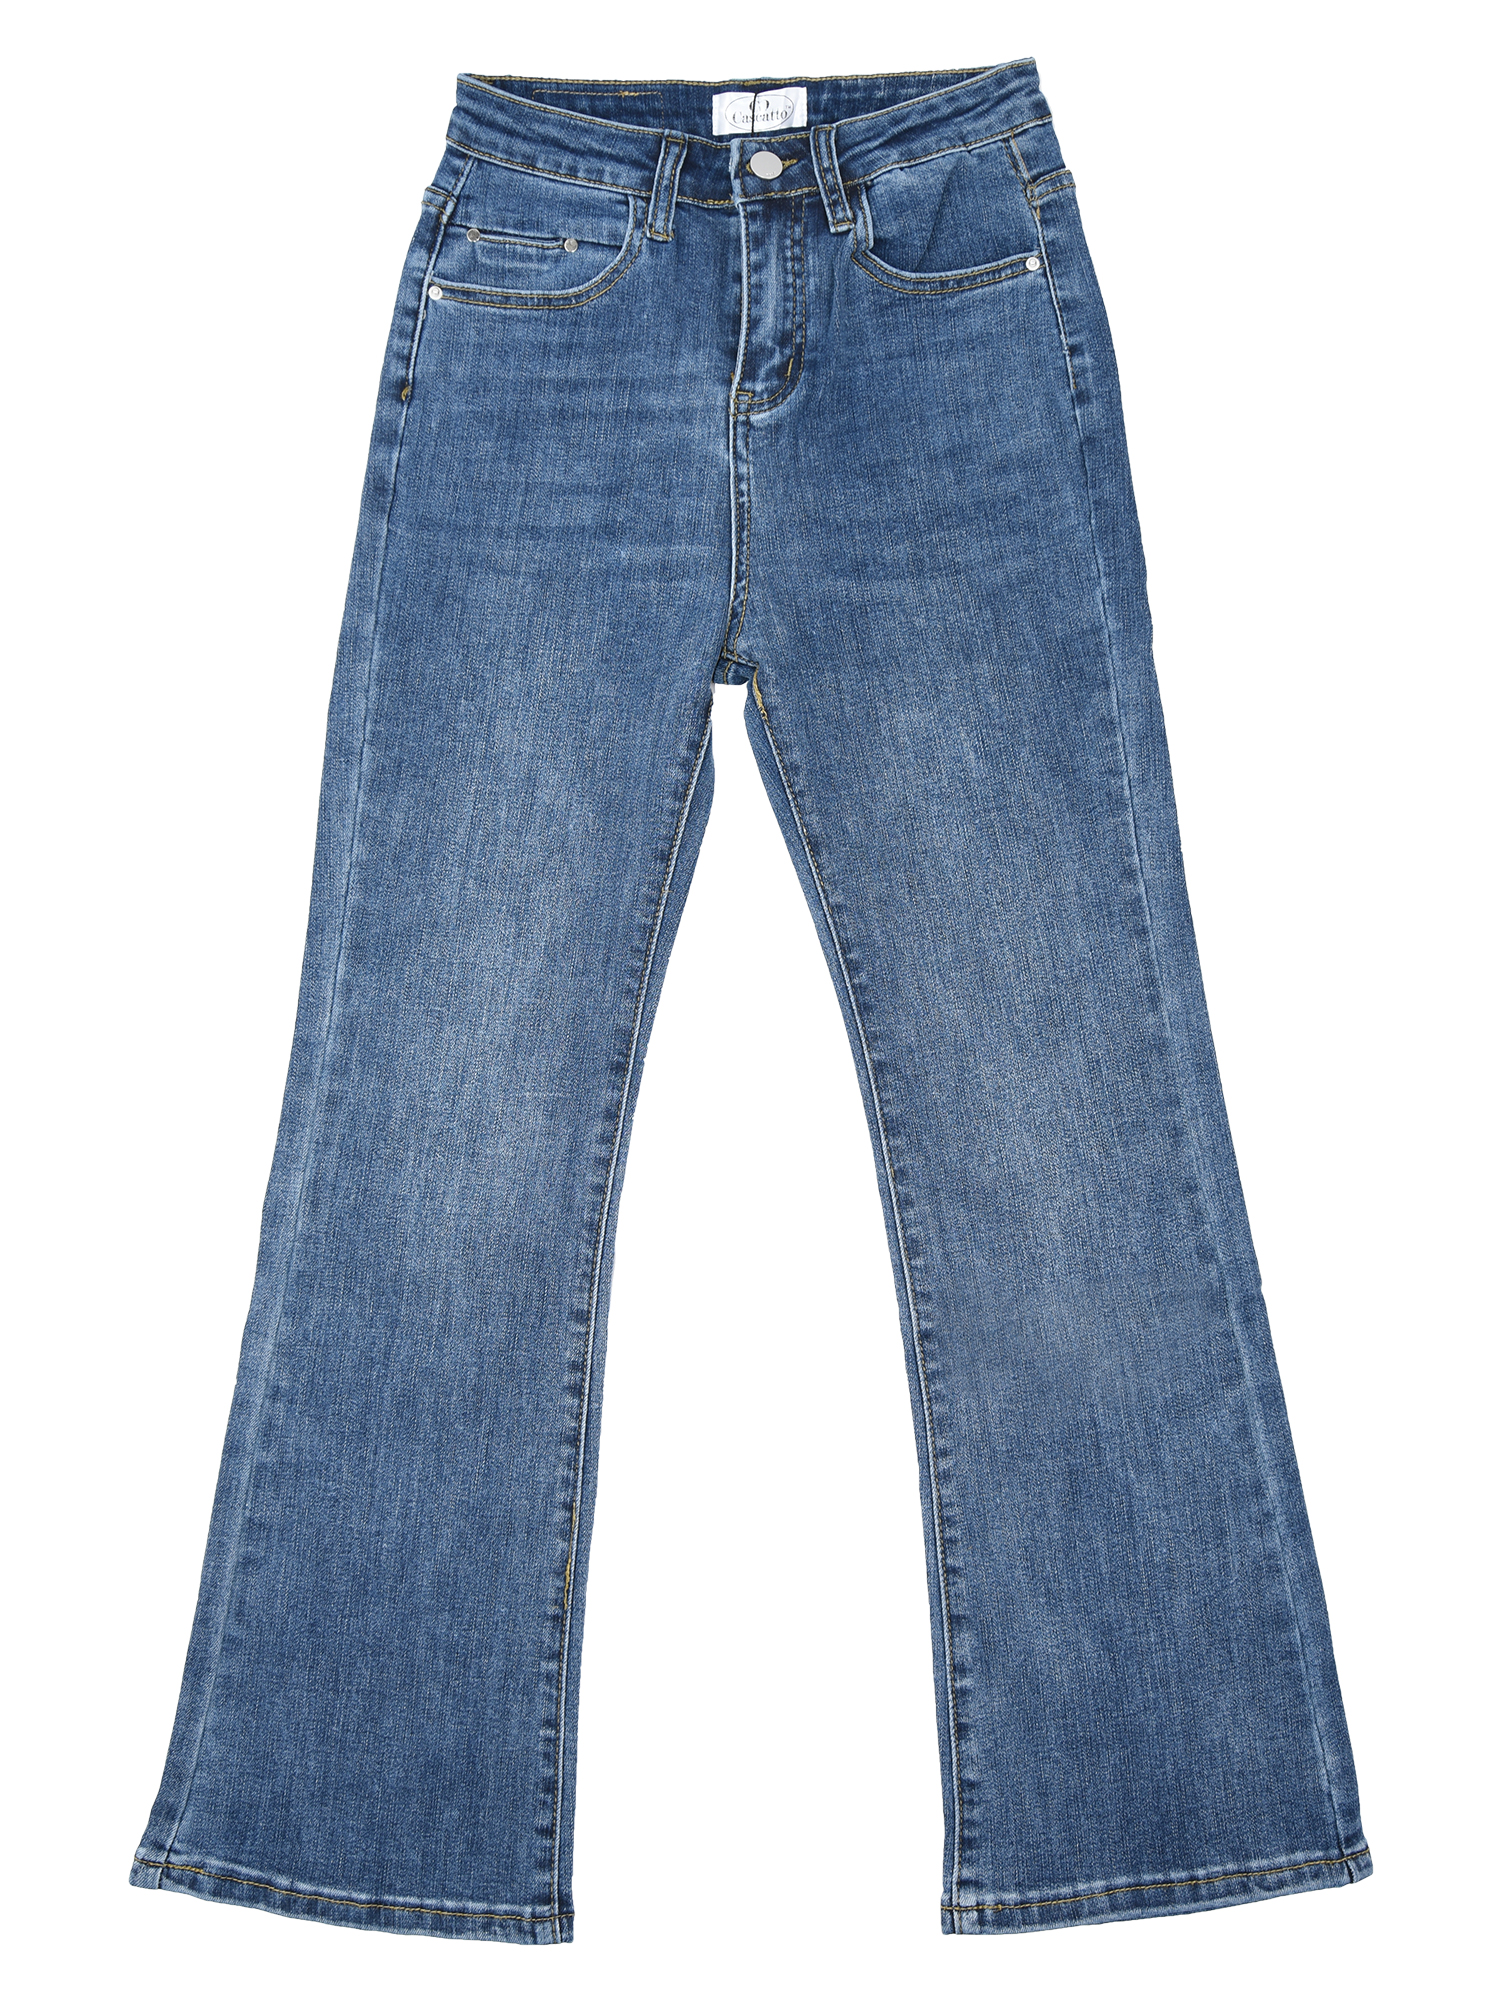 Купить Брюки женские джинсовые 22DGG11 синий